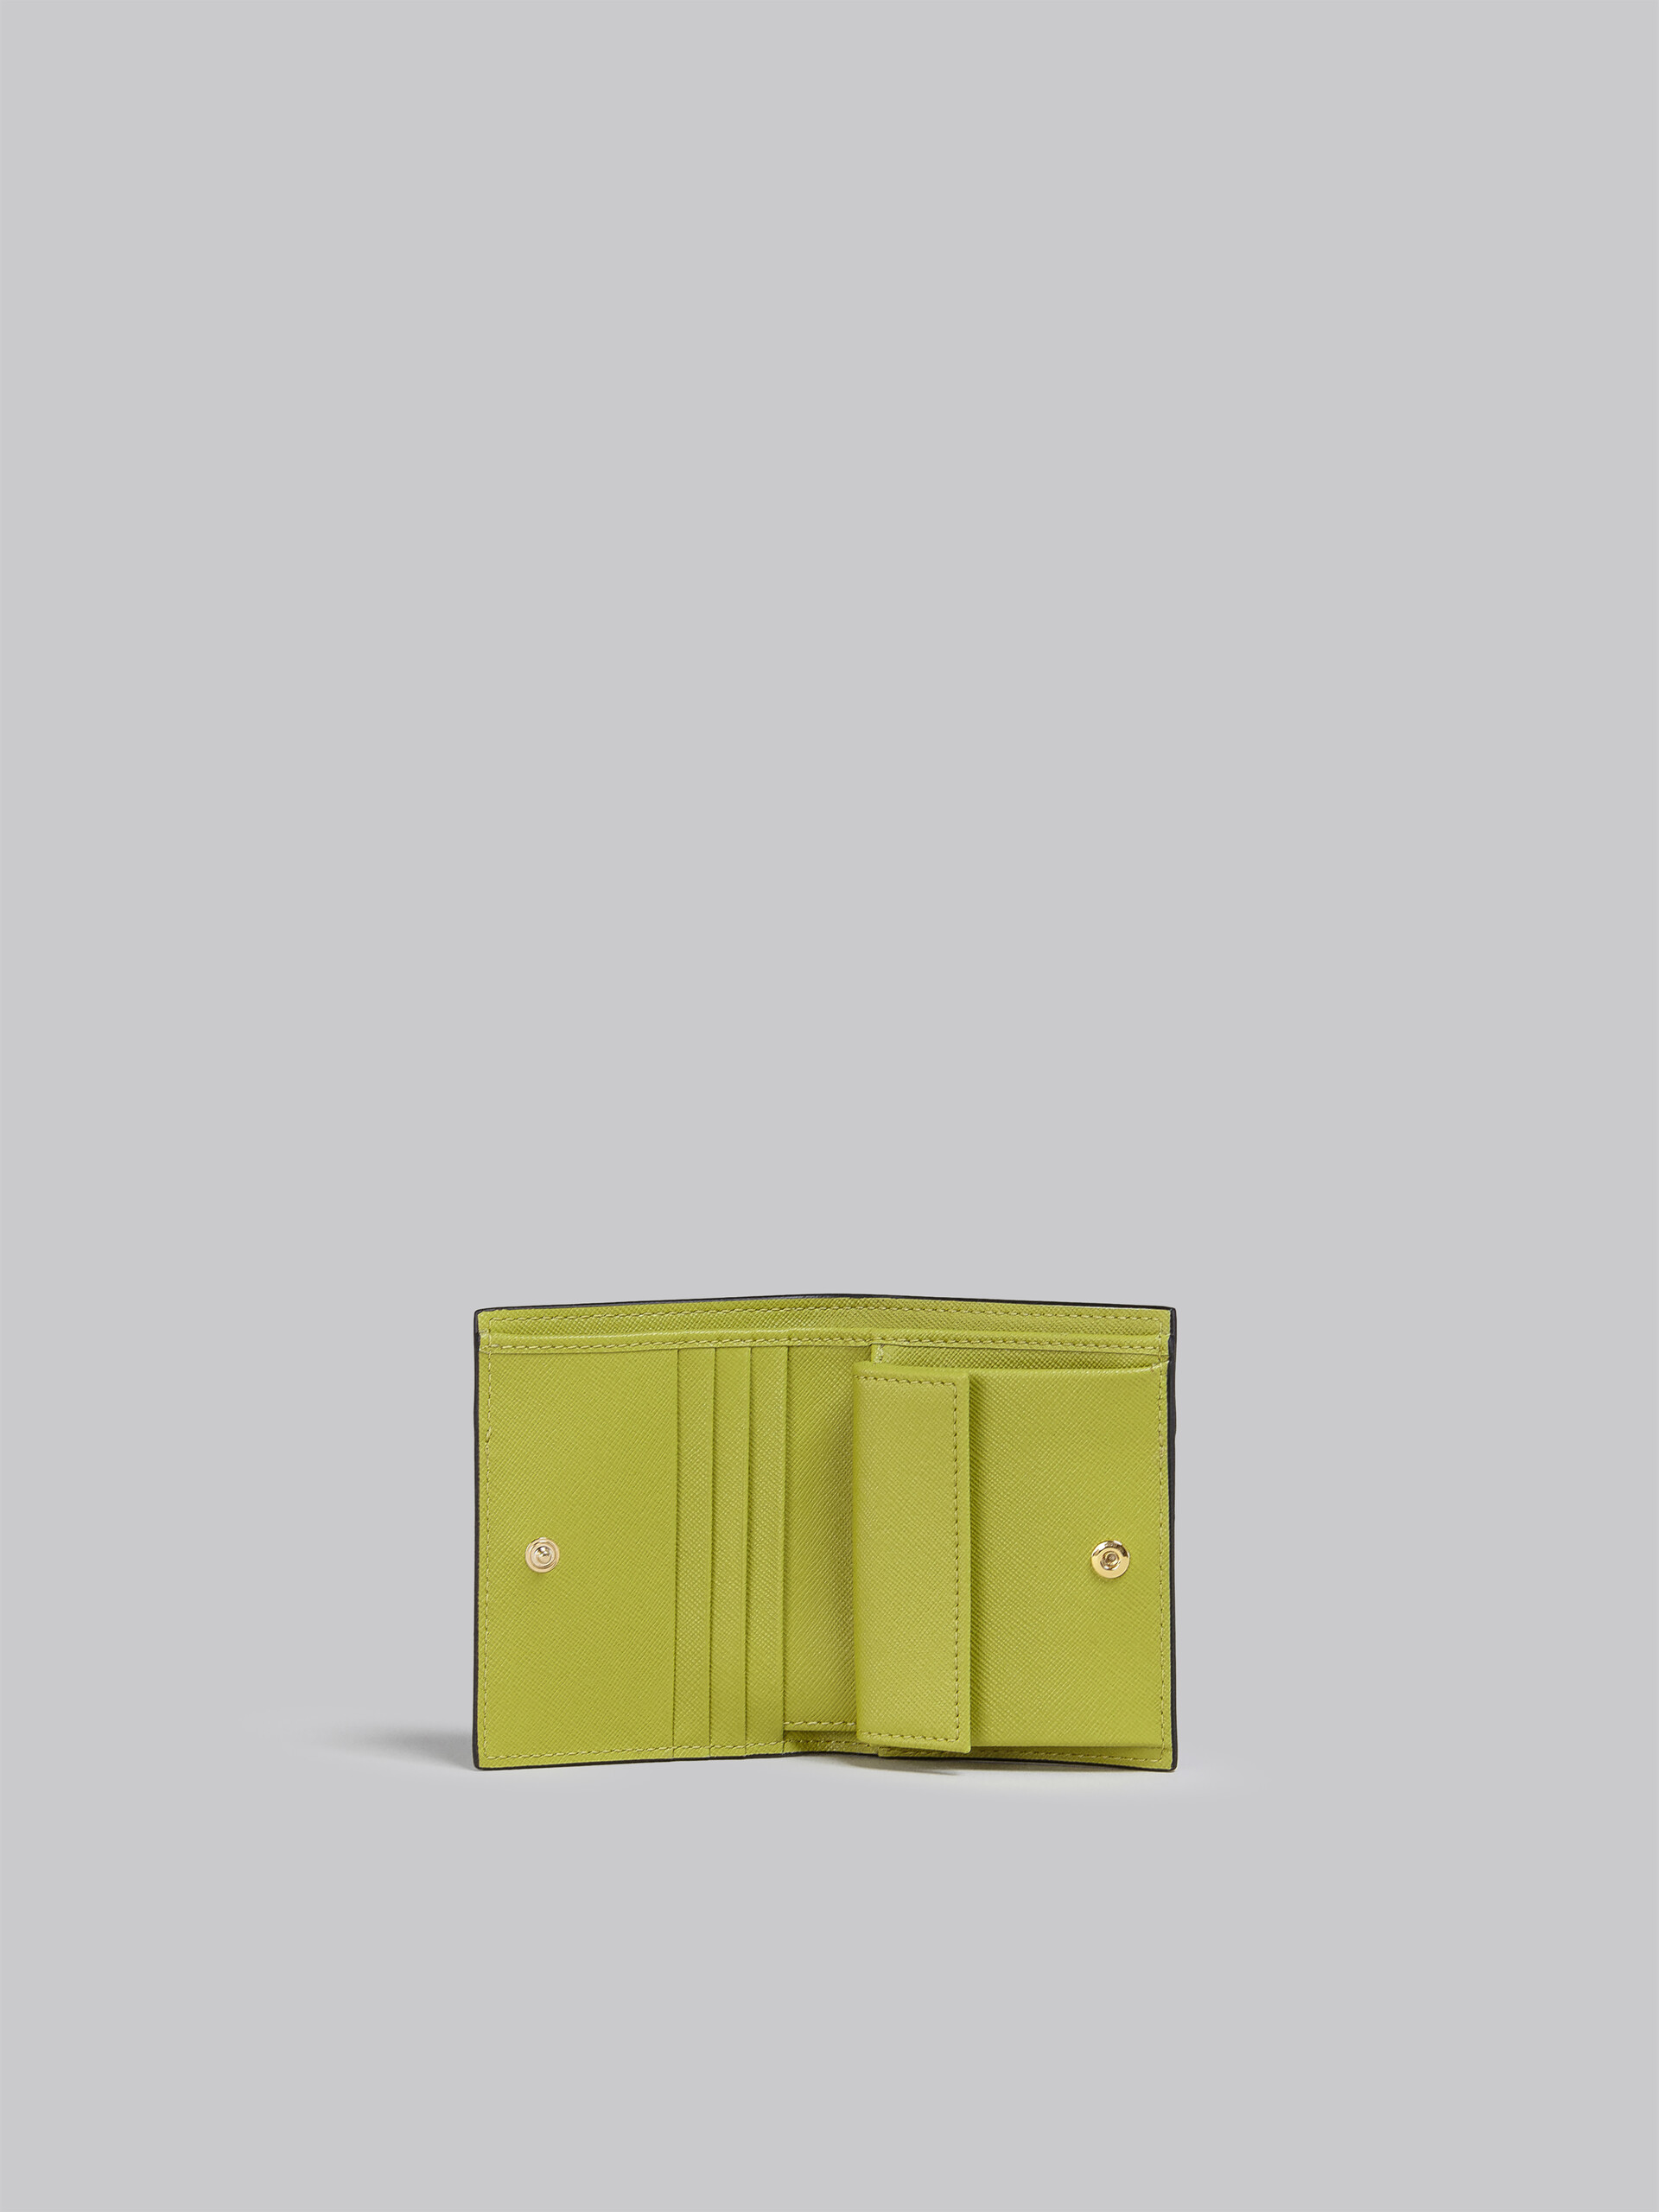 Portafoglio bi-fold in saffiano verde e bianco - Portafogli - Image 2